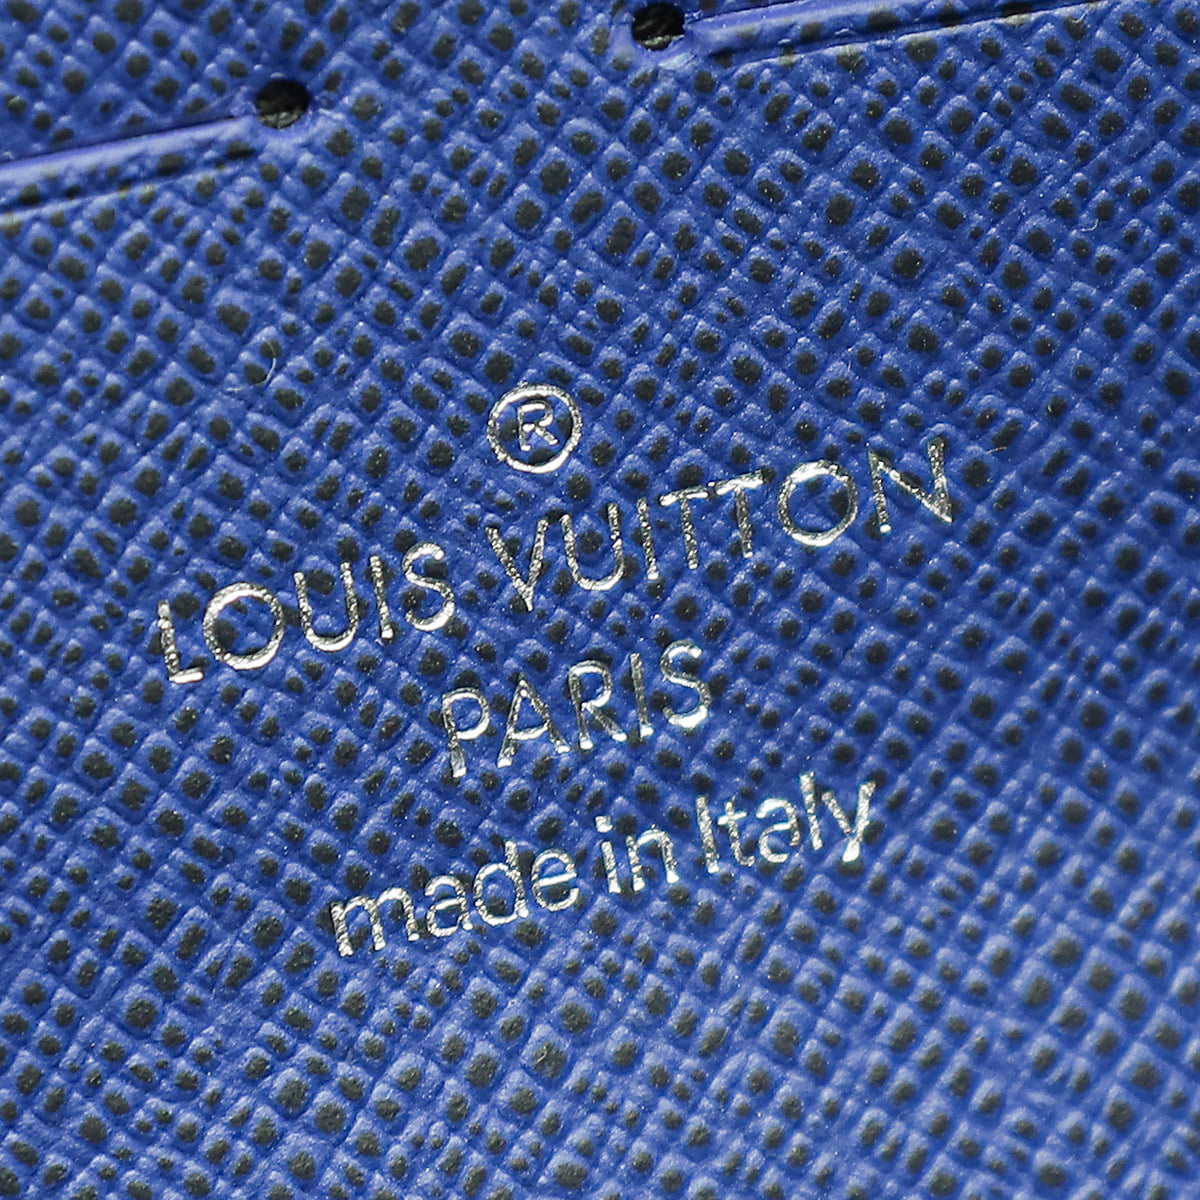 Louis Vuitton Louis Vuitton Bag Monogram Small Outdoor Pouch Pacific Blue  Pochette M43854 a764 ref.639400 - Joli Closet